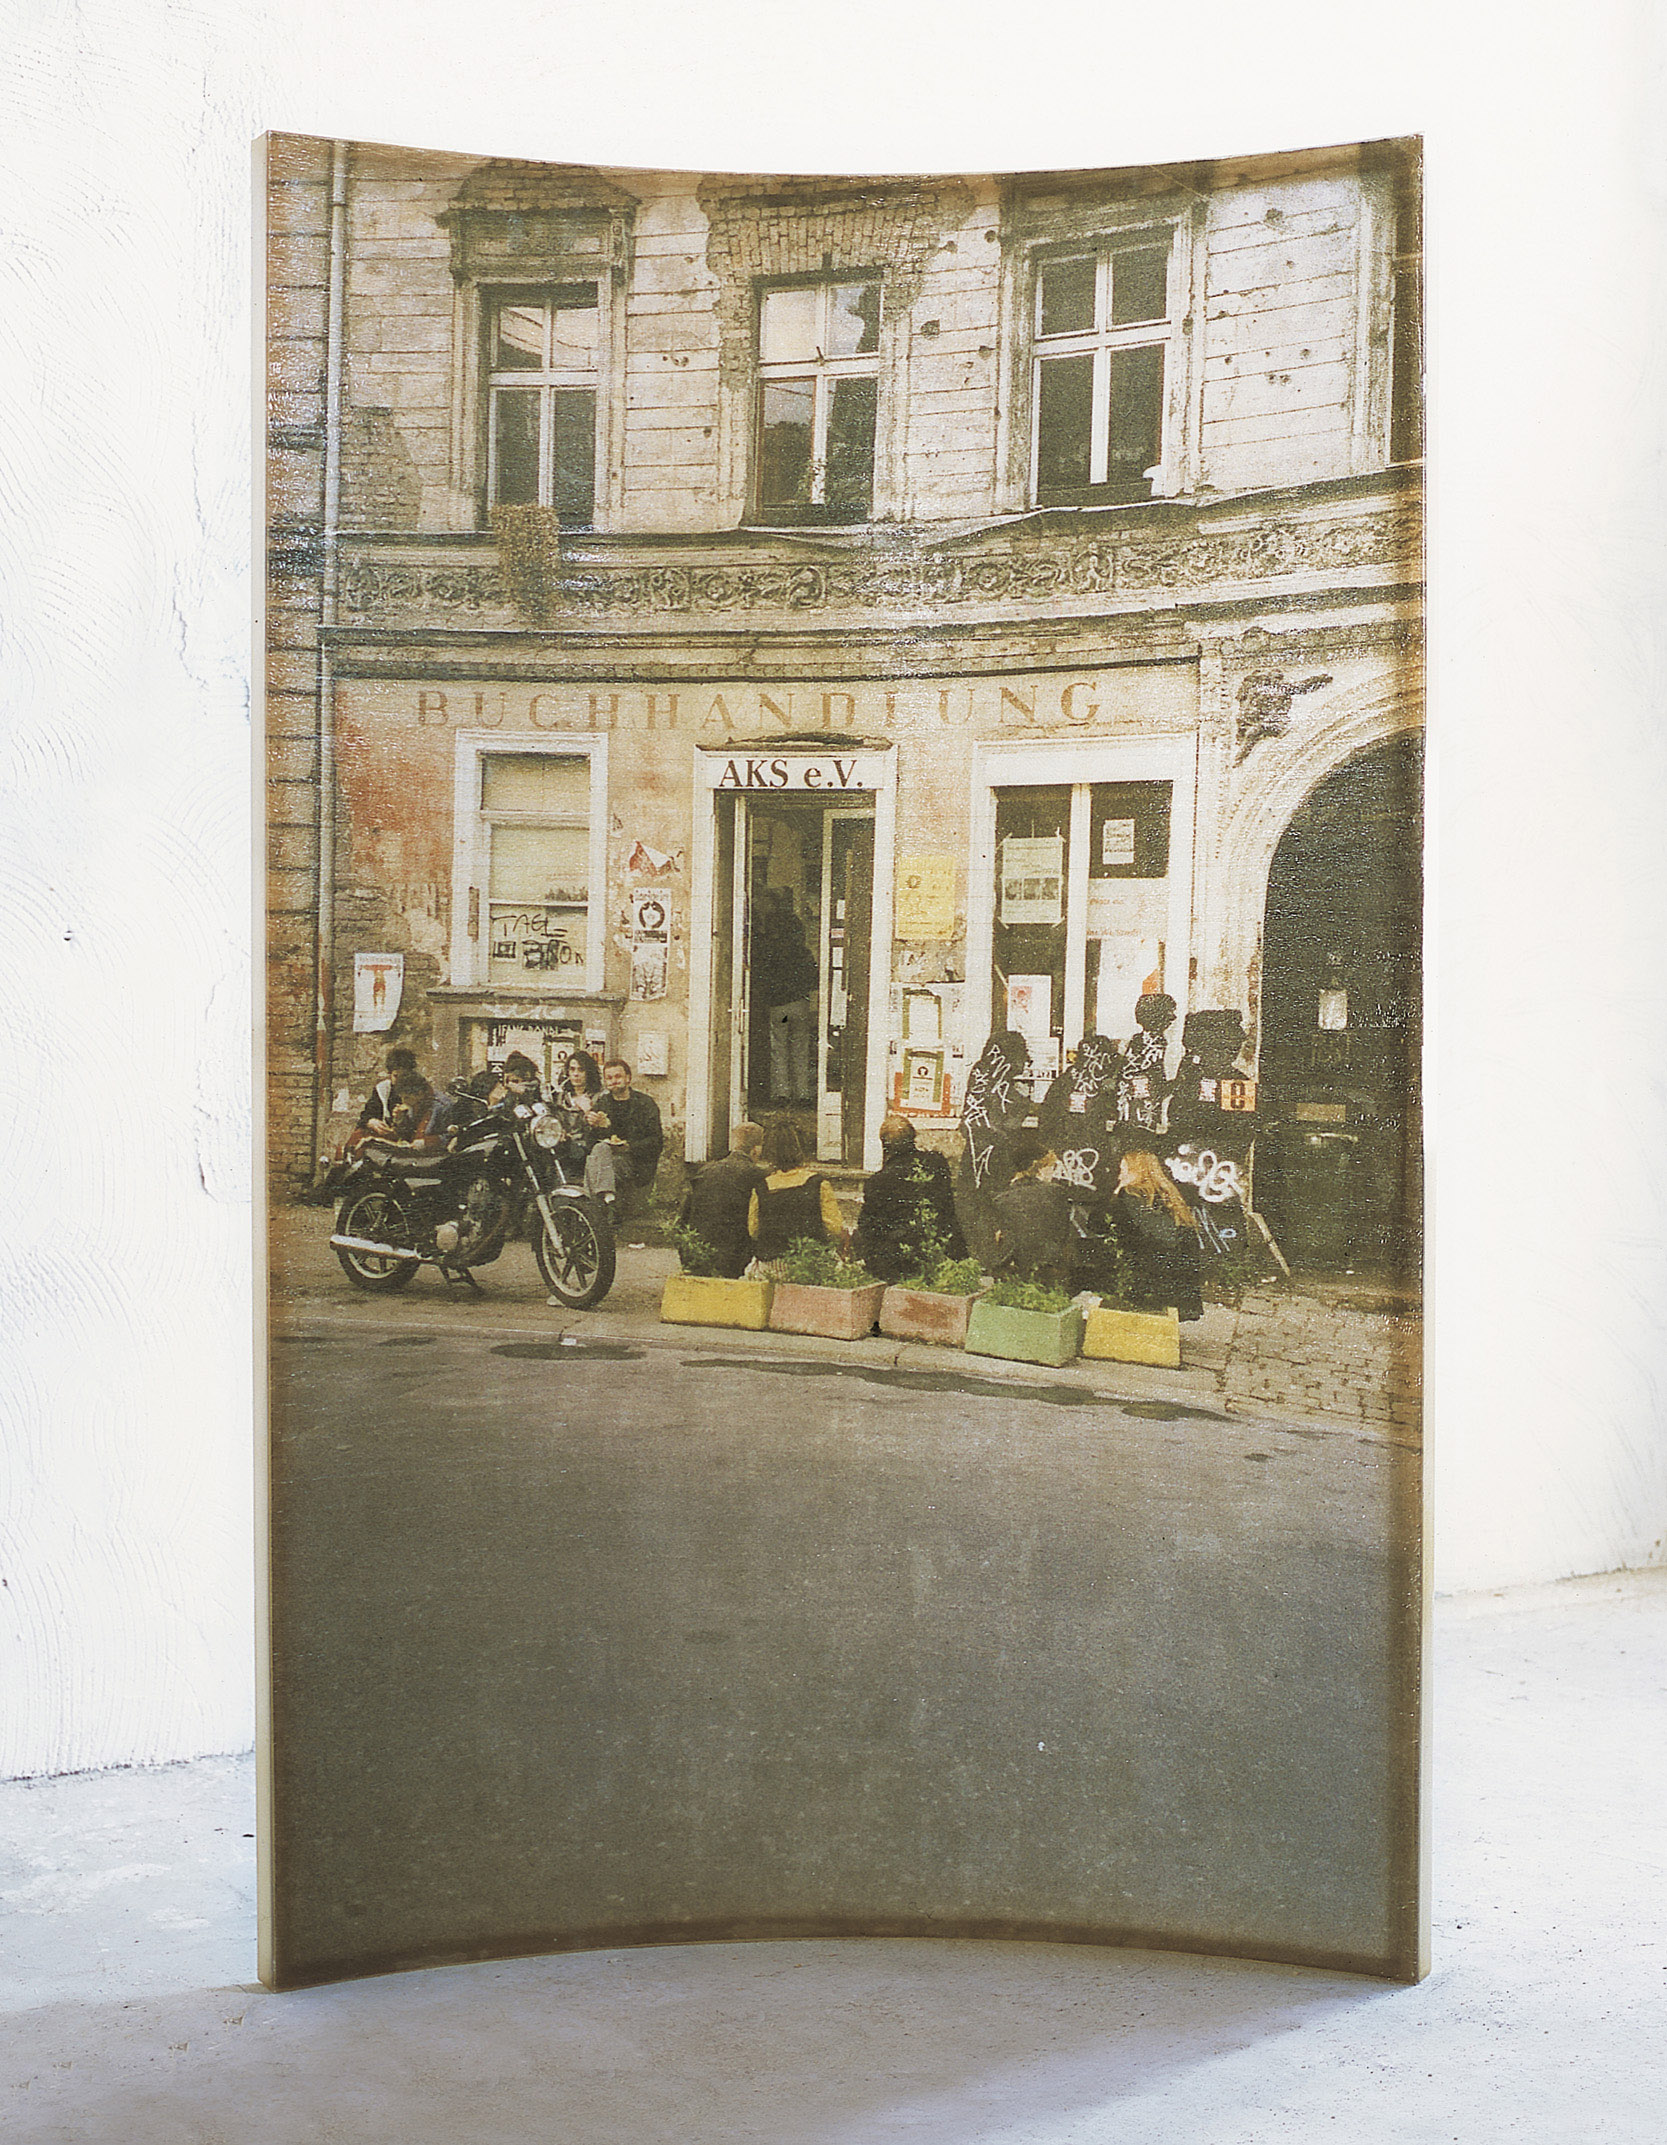 Amador. 'L'home i la ciutat', 2000, resina de poliéster y fotografía, 240 x 163 x 35 cm.